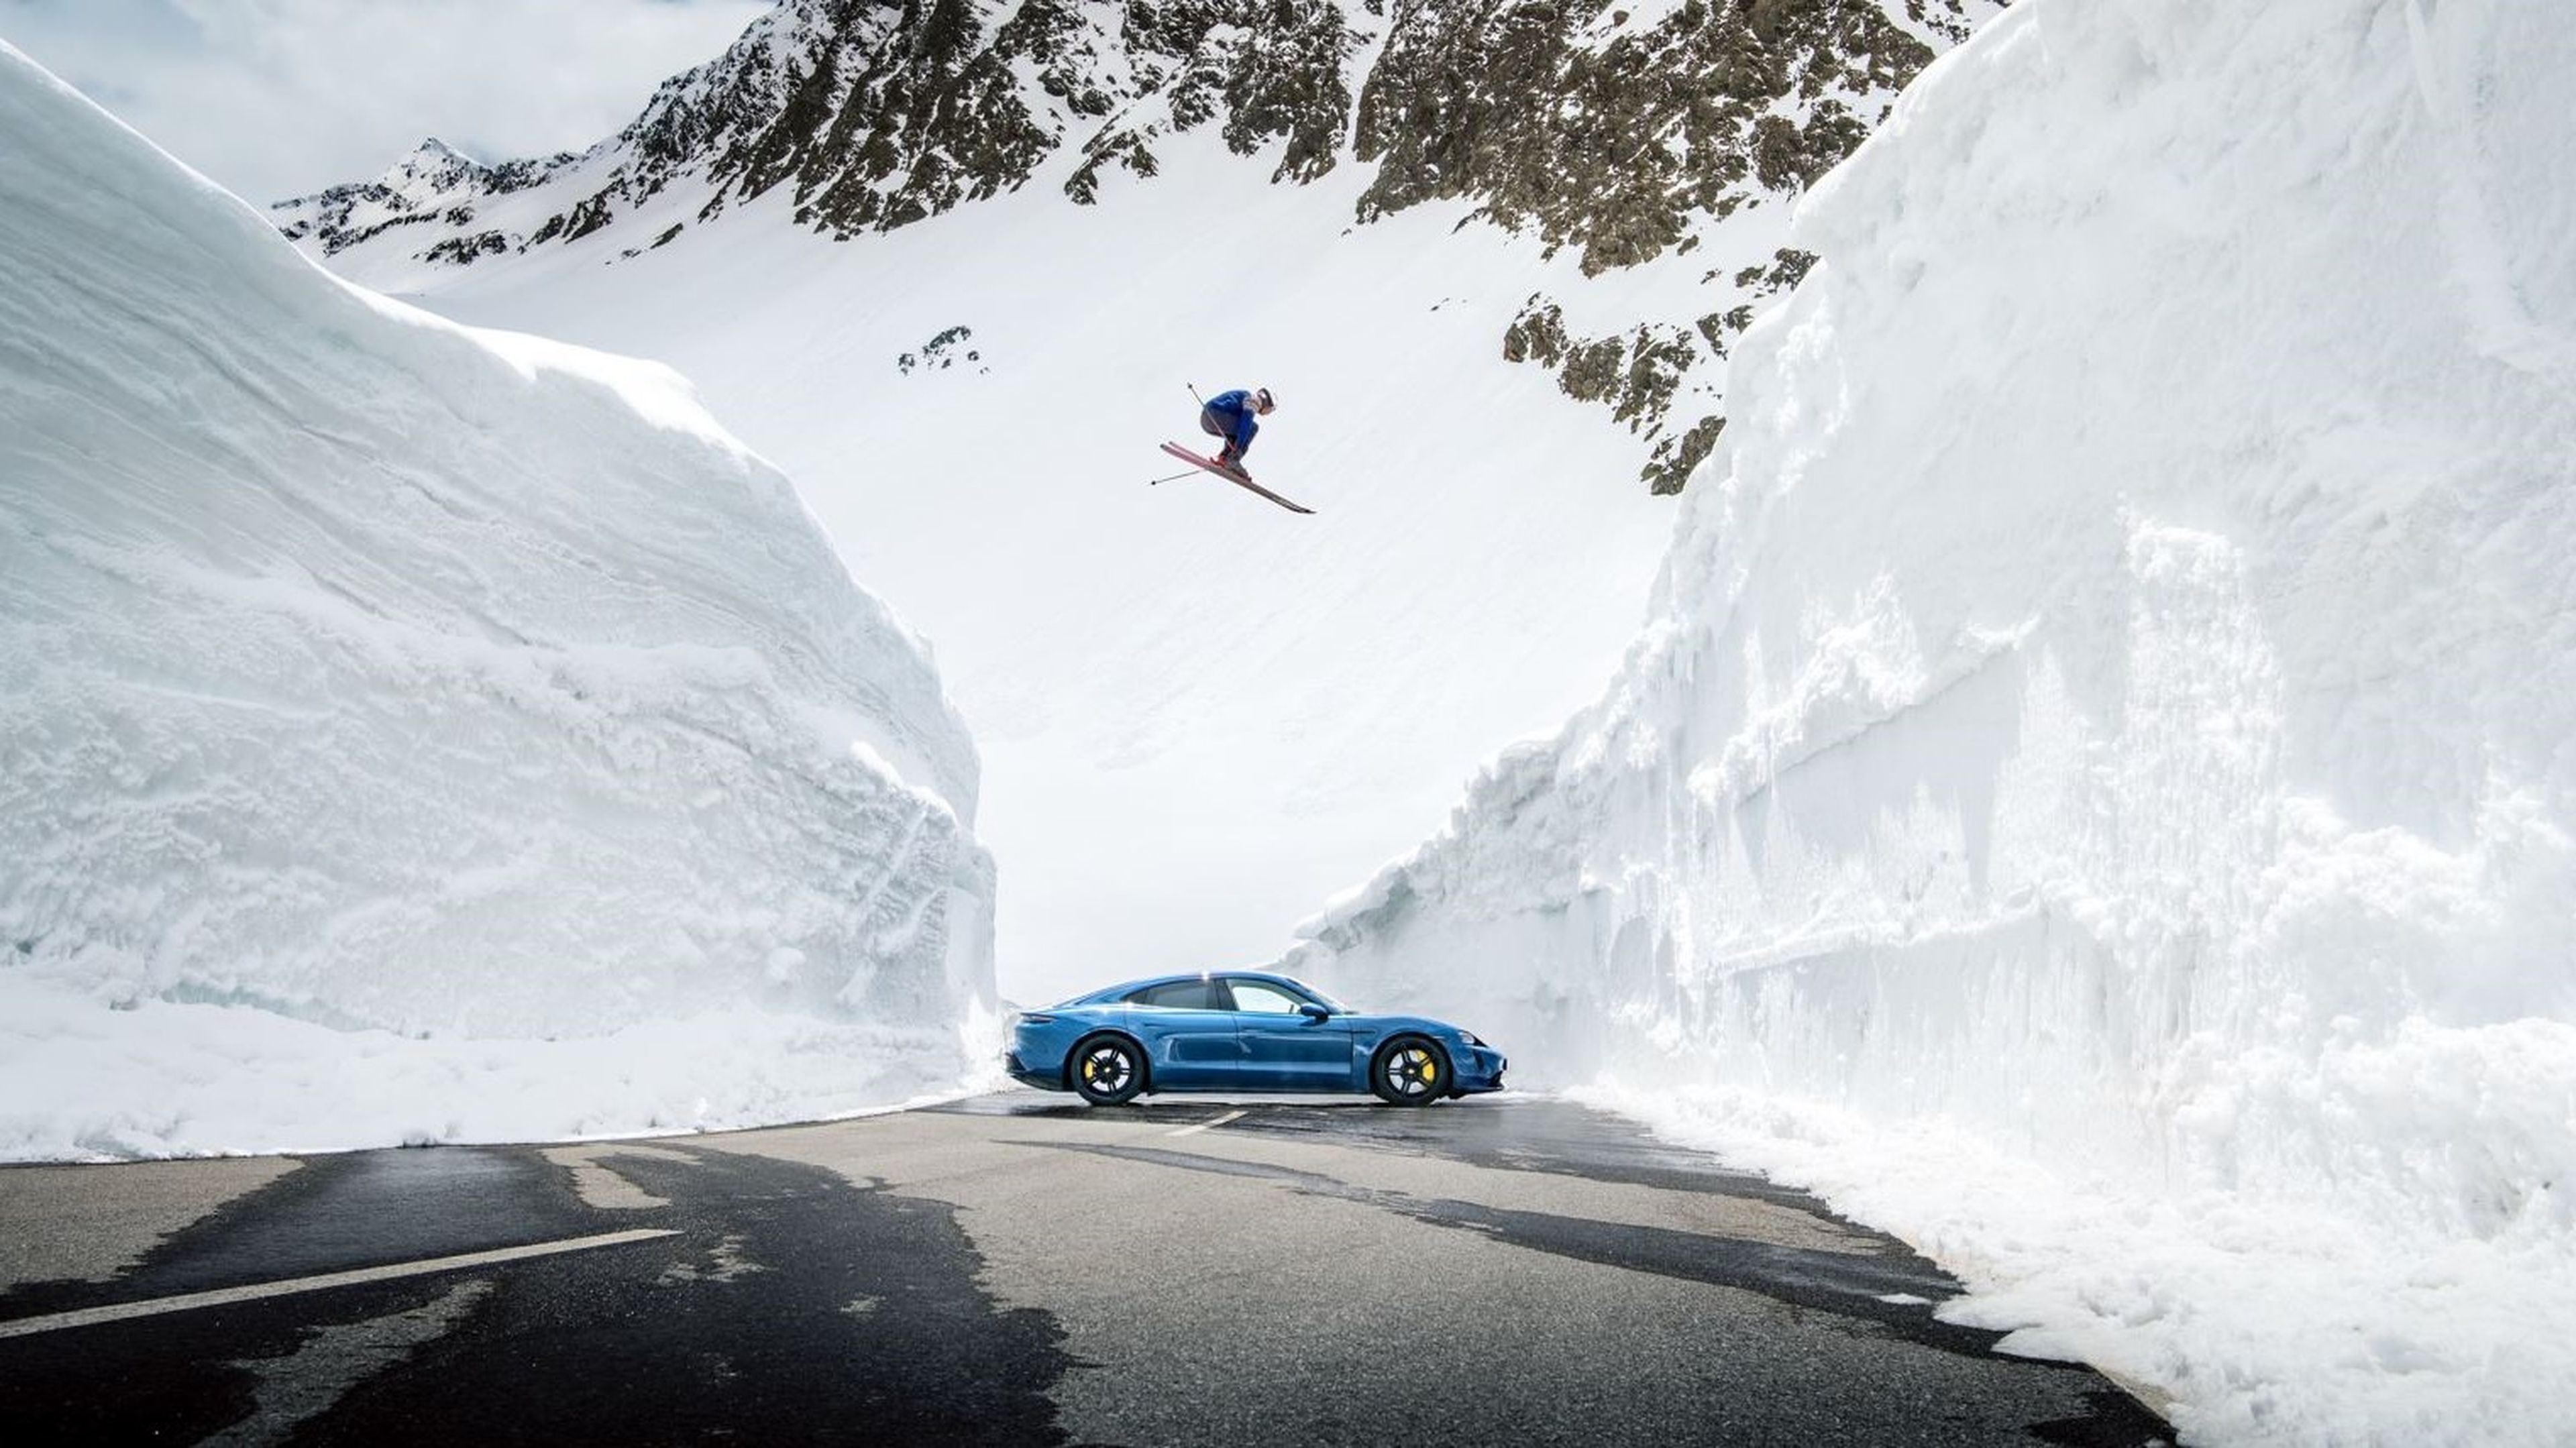 Reinterpretación de la foto 'El Salto', con un esquiador saltando sobre un Porsche Taycan. (Foto: Porsche)